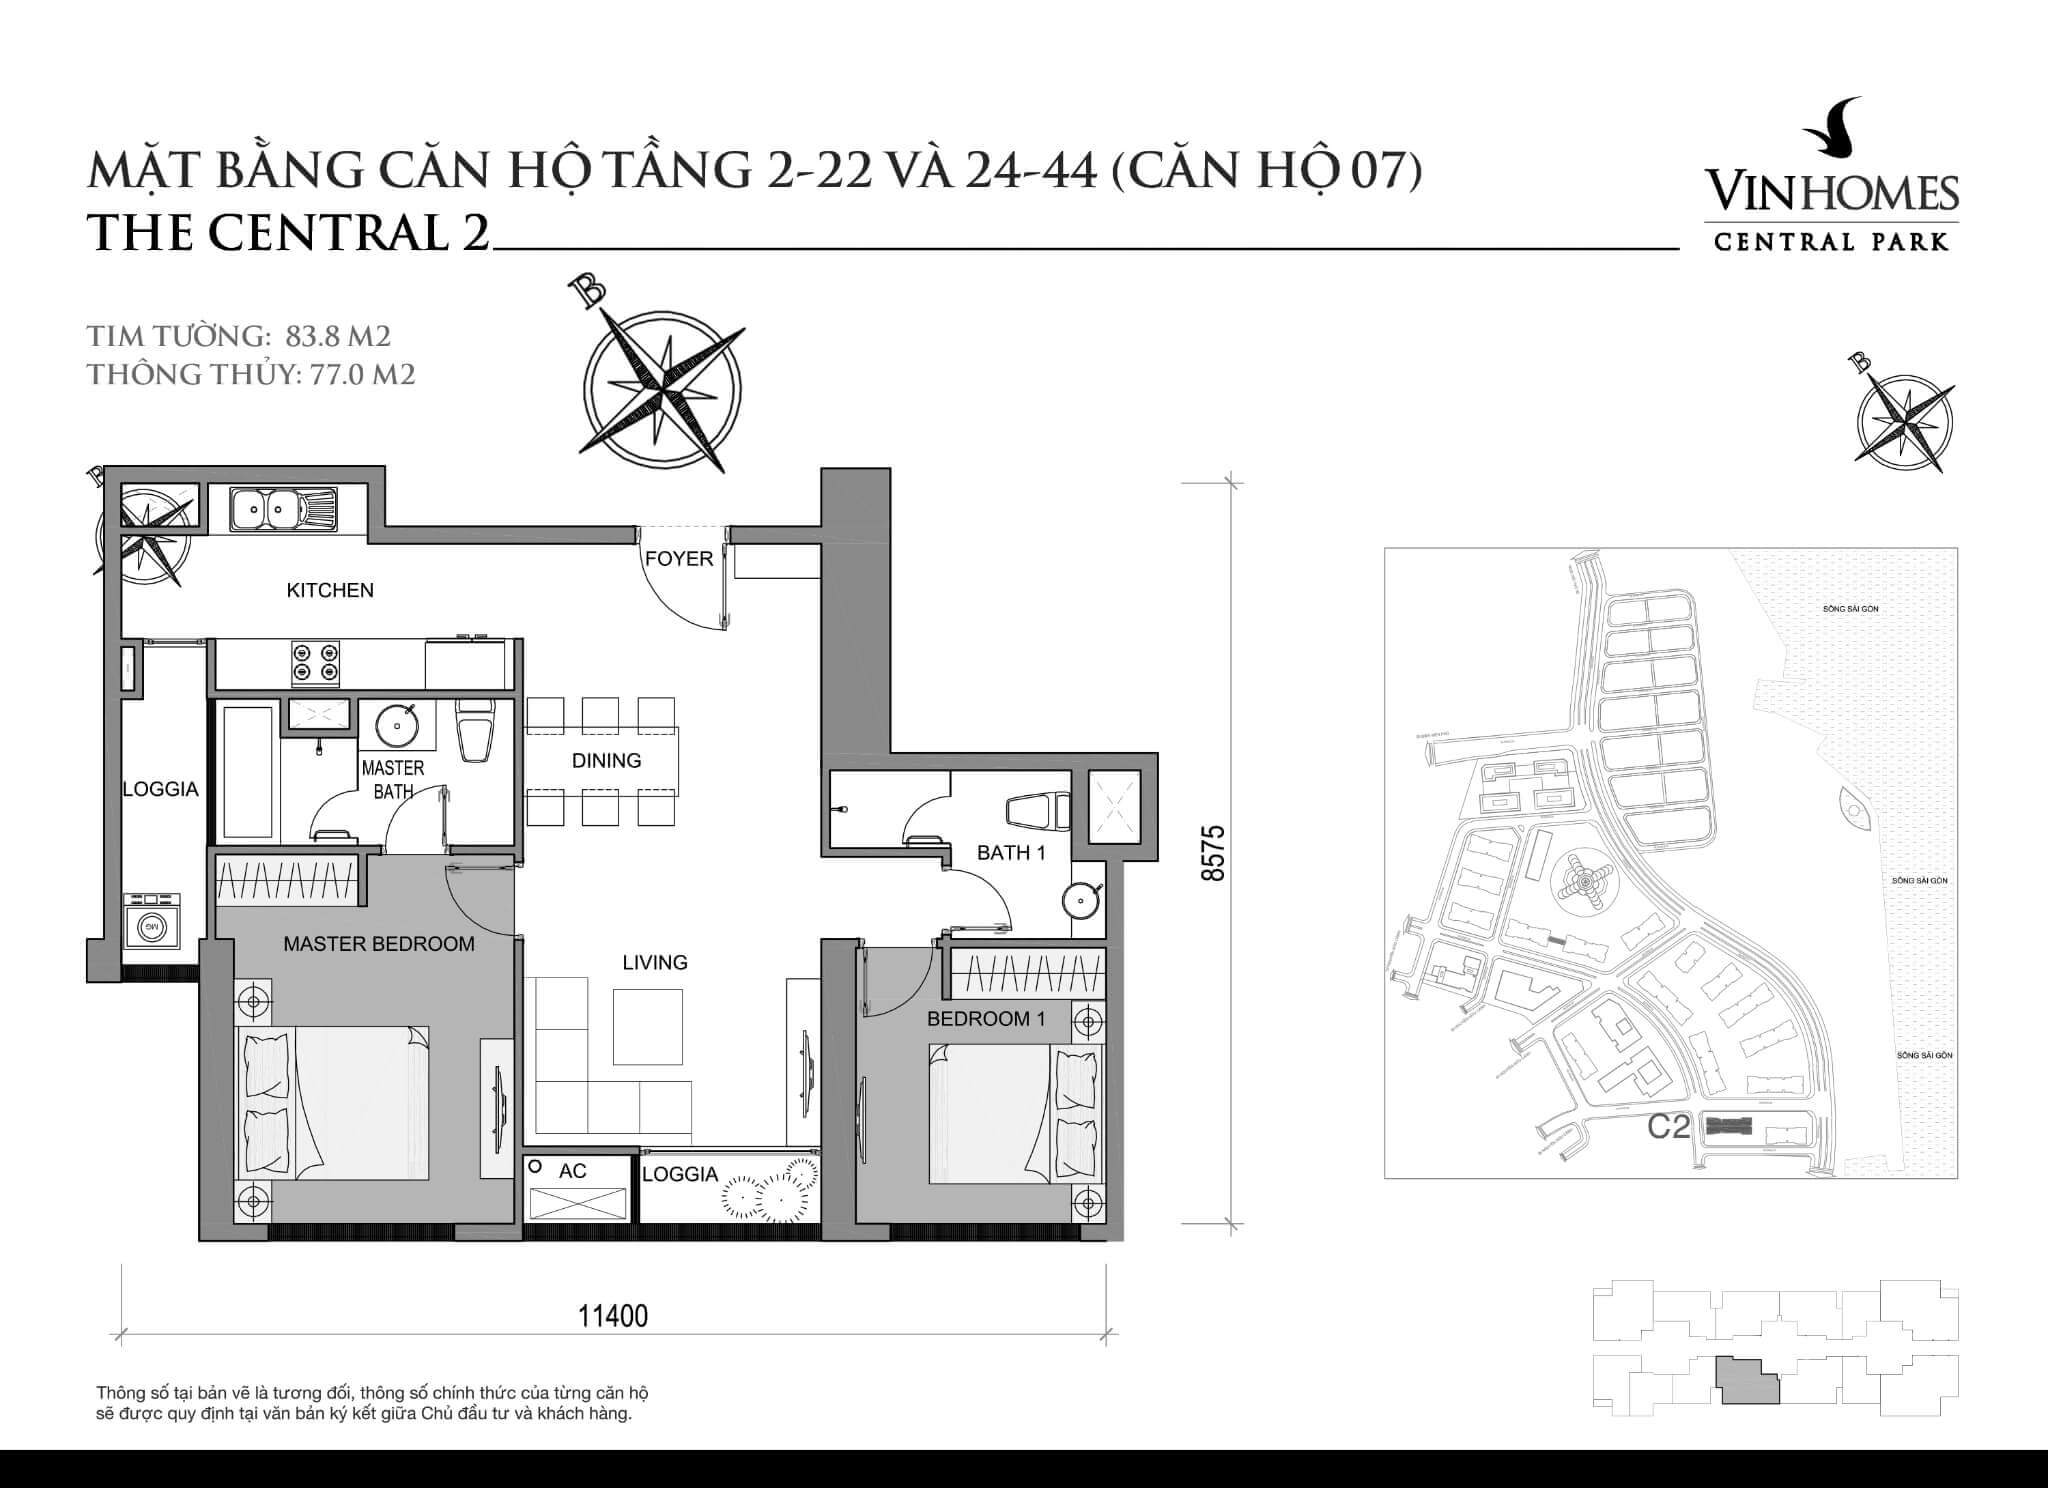 layout căn hộ số 7 tầng 2-44 Central 2